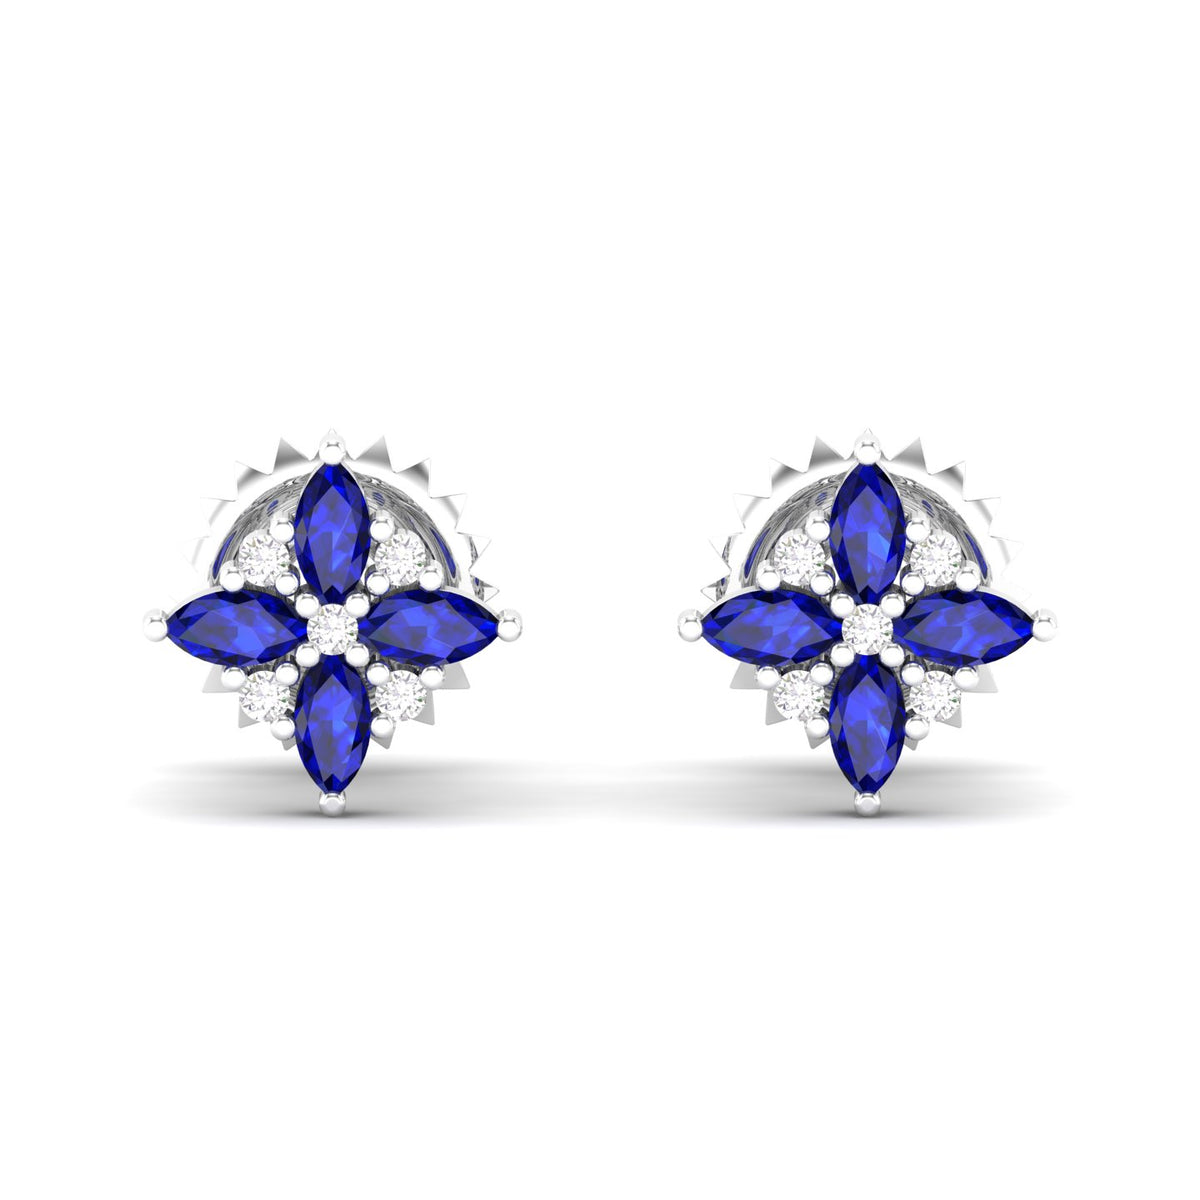 Maurya Frozen Flower Blue Sapphire Stud Earrings with Diamond